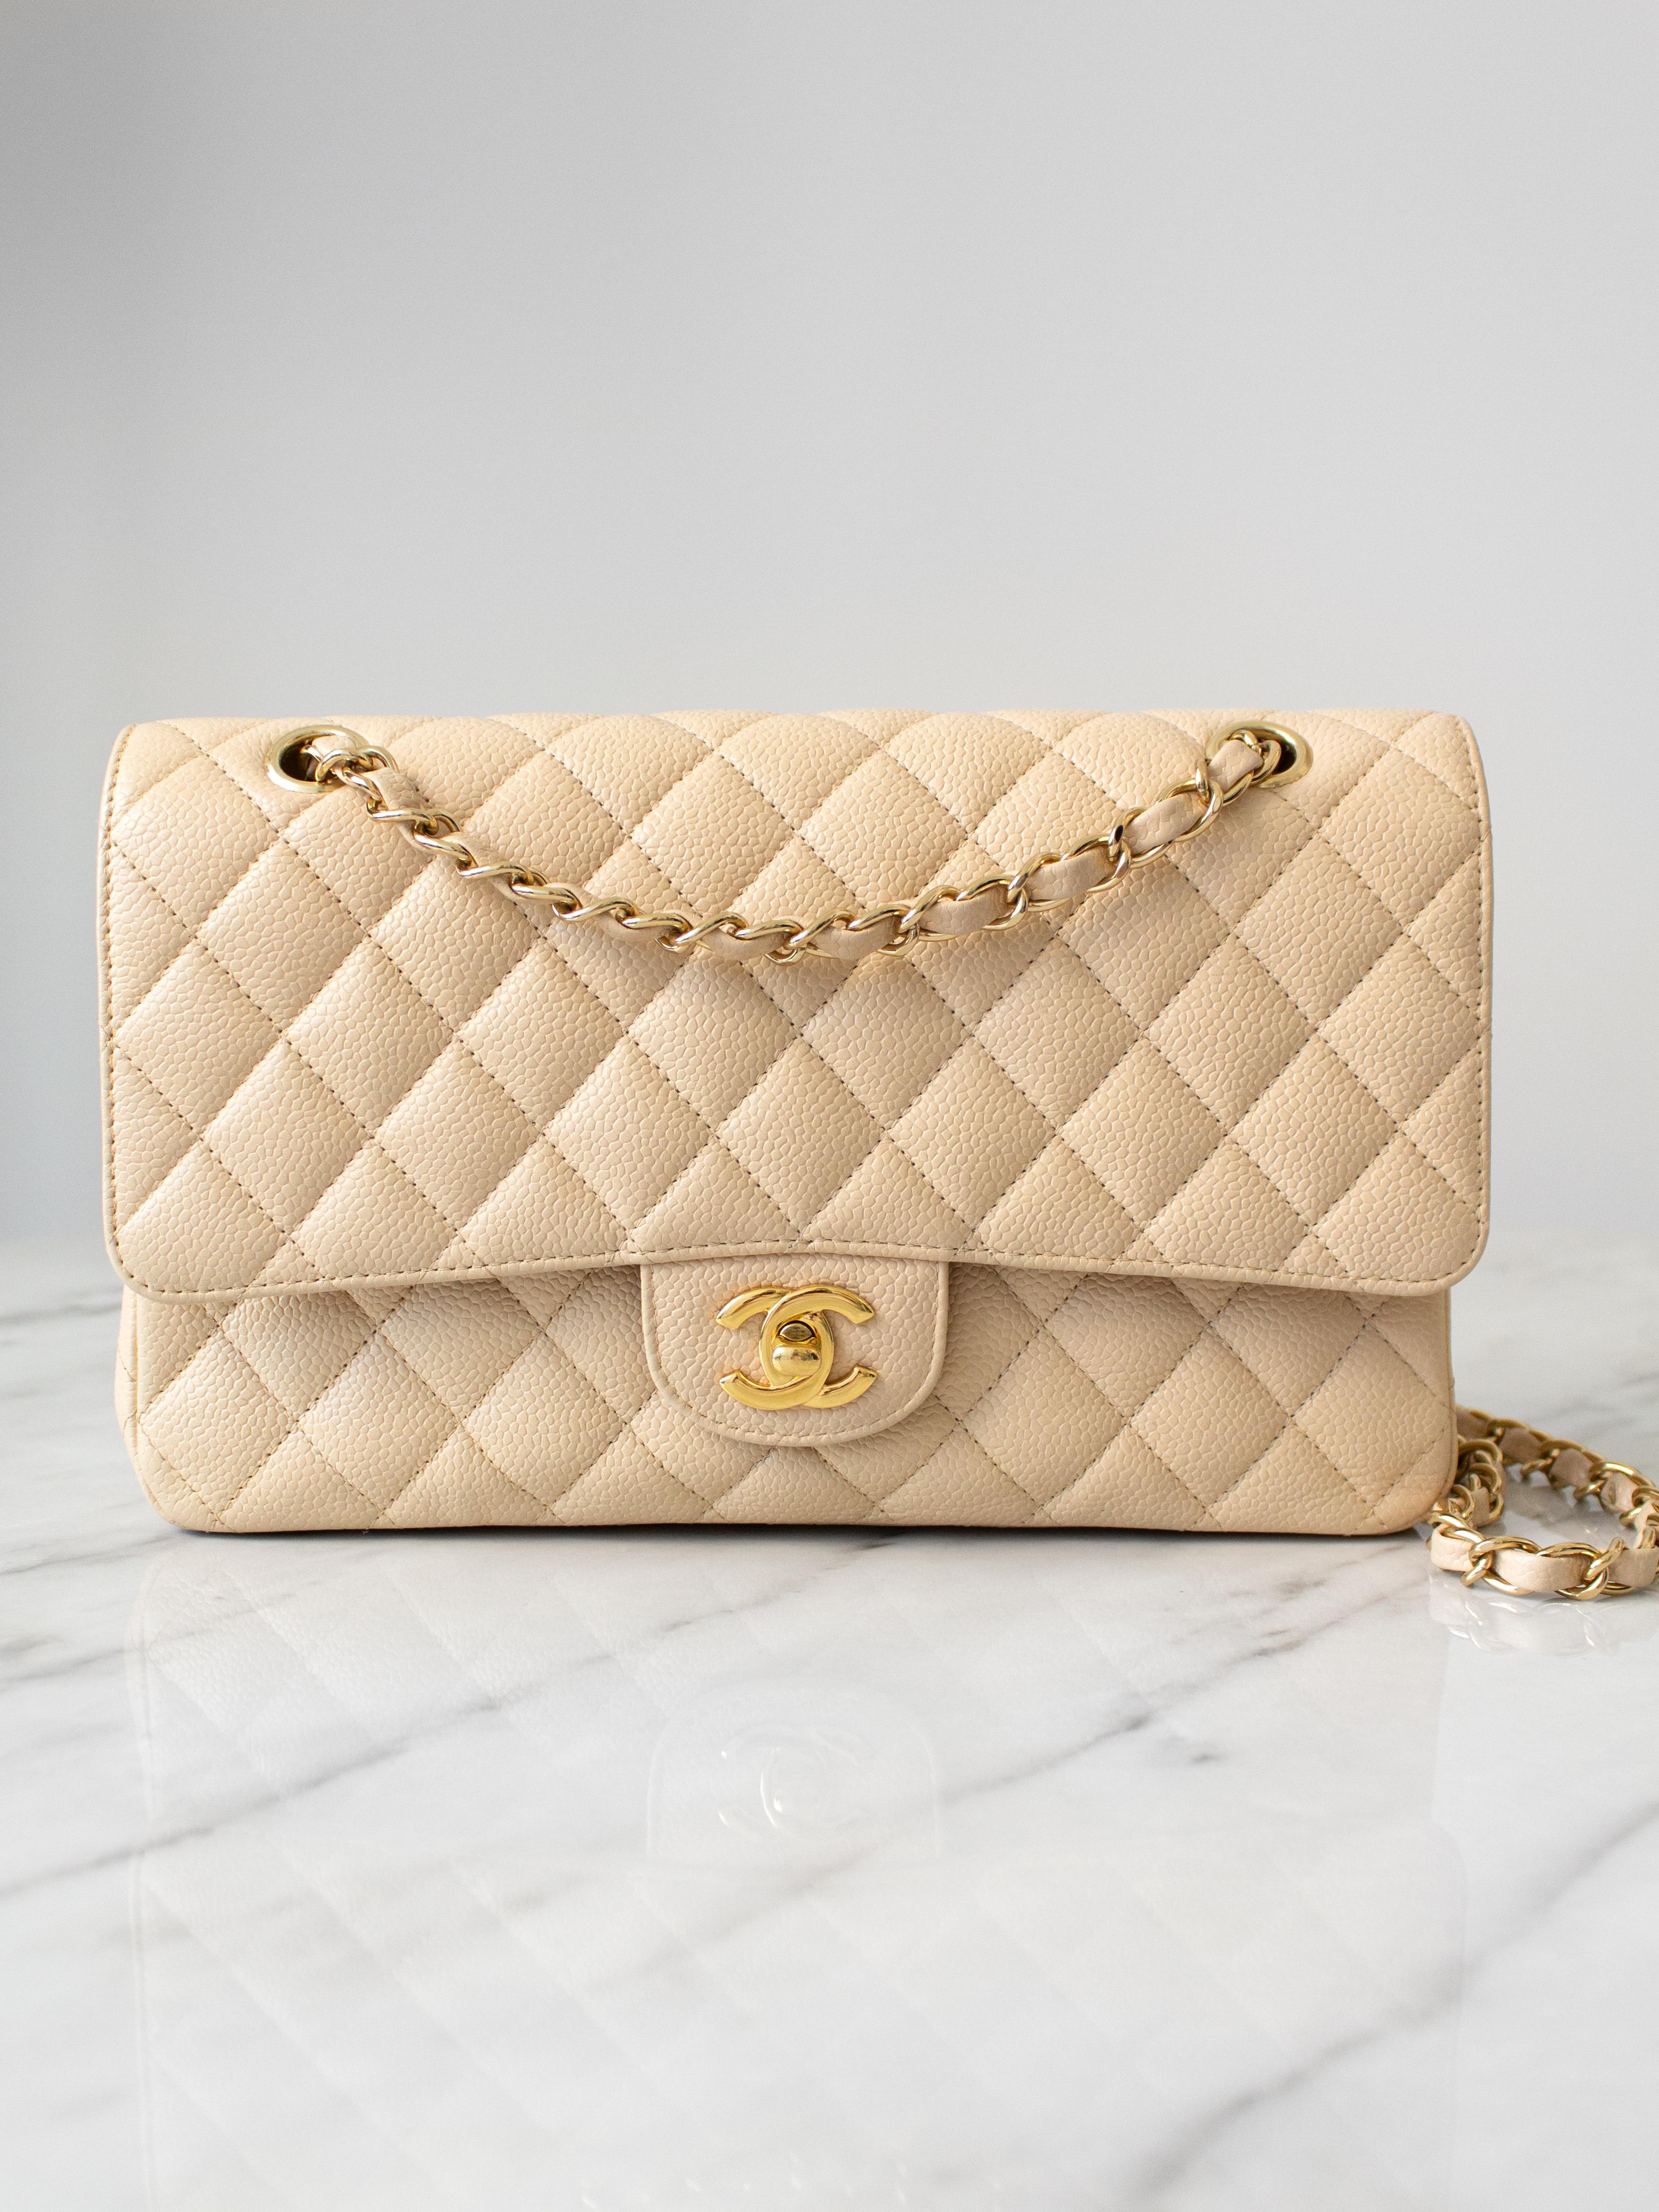 Voici un sac très convoité : Chanel Double Flap en Beige Clair - une teinte beige neutre avec une touche d'ivoire très appréciée des fans de Chanel. Elle a fait ses débuts en 2009 et est rapidement devenue une couleur classique que Chanel propose